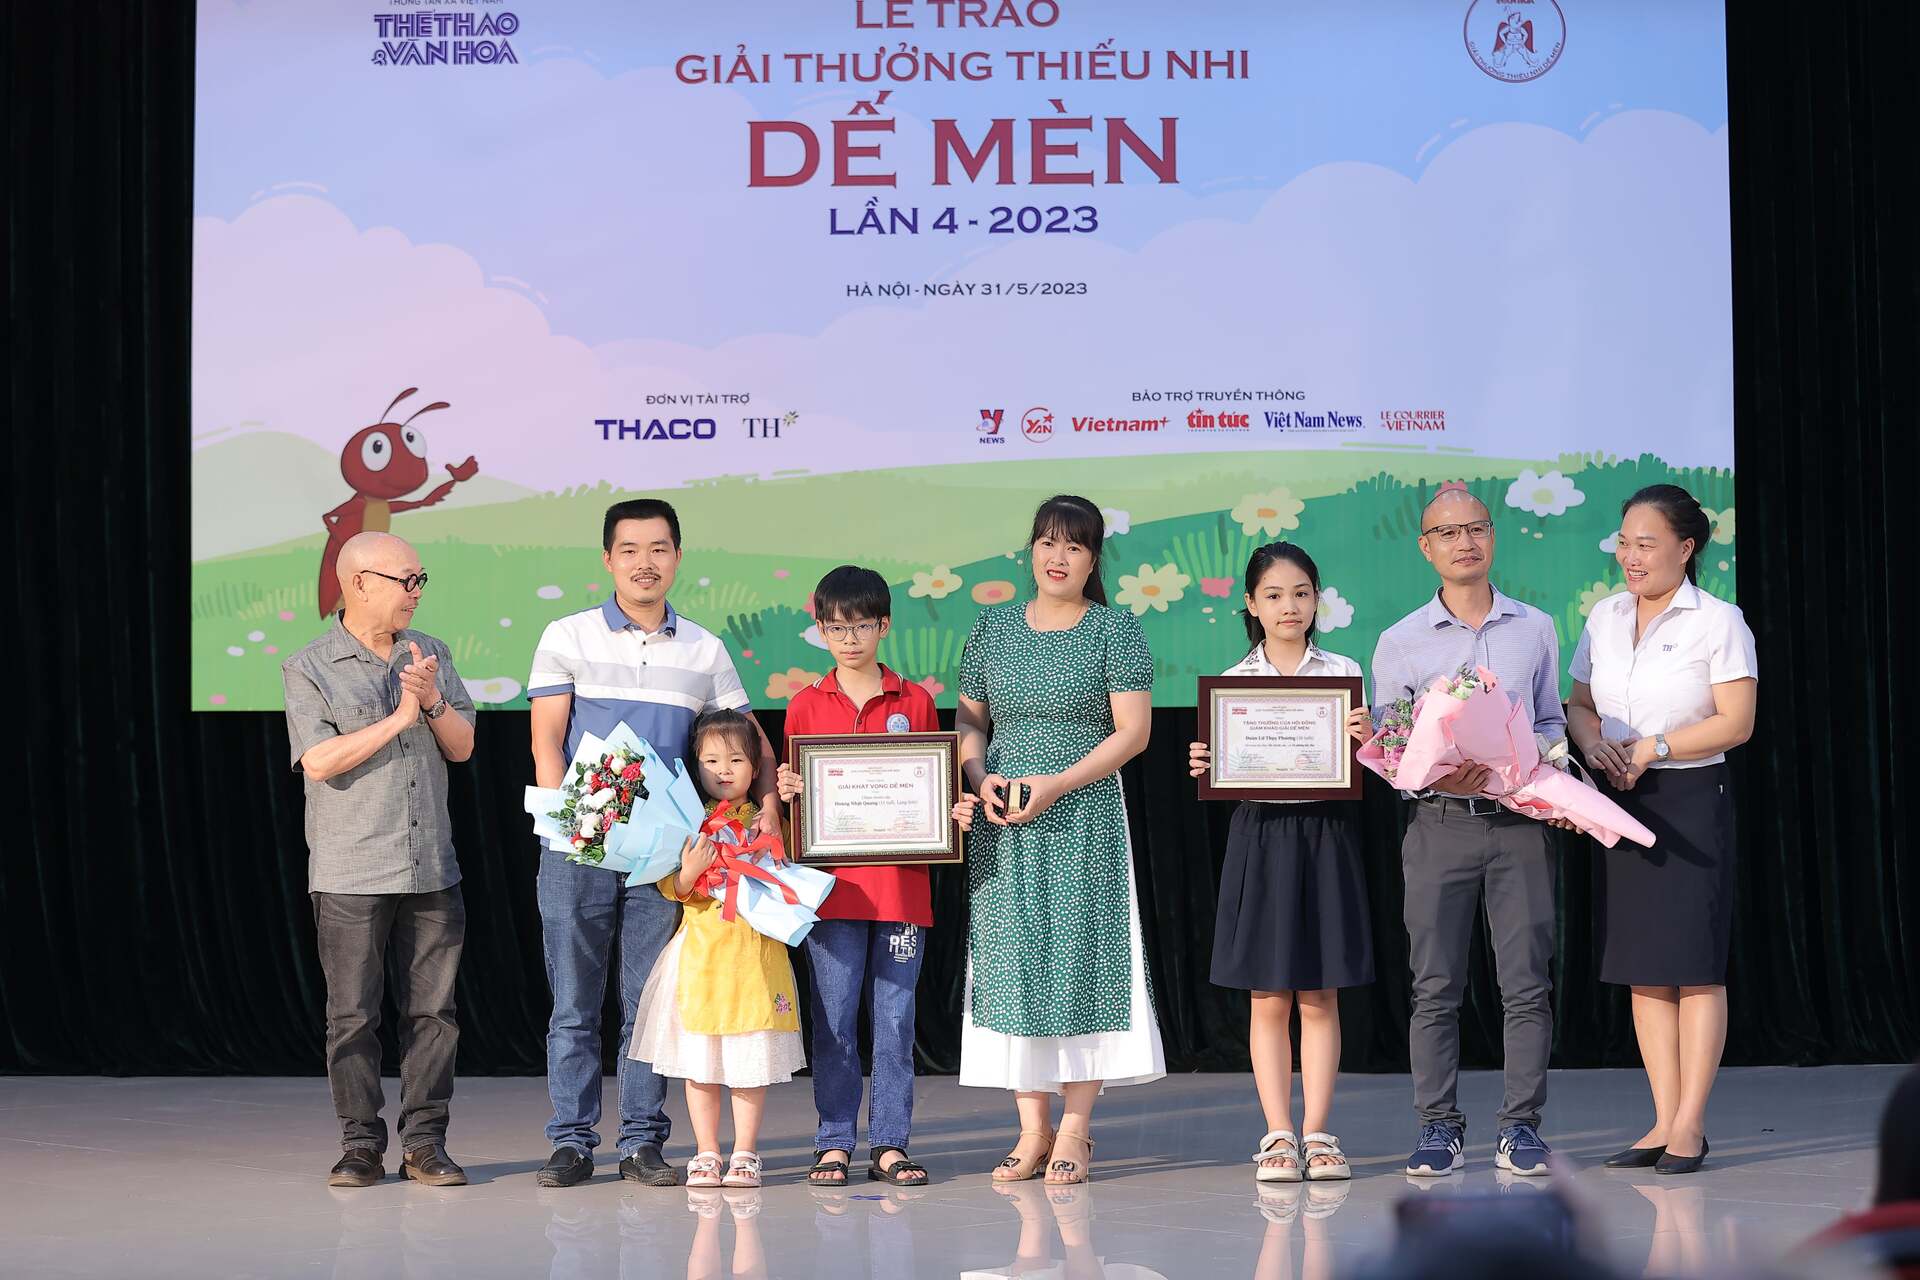 BTC trao giải Khát vọng Dế Mèn cho họa sĩ nhí Hoàng Nhật Quang và tặng thưởng của Hội đồng Giám khảo cho Nhà văn nhí Thụy Phương.